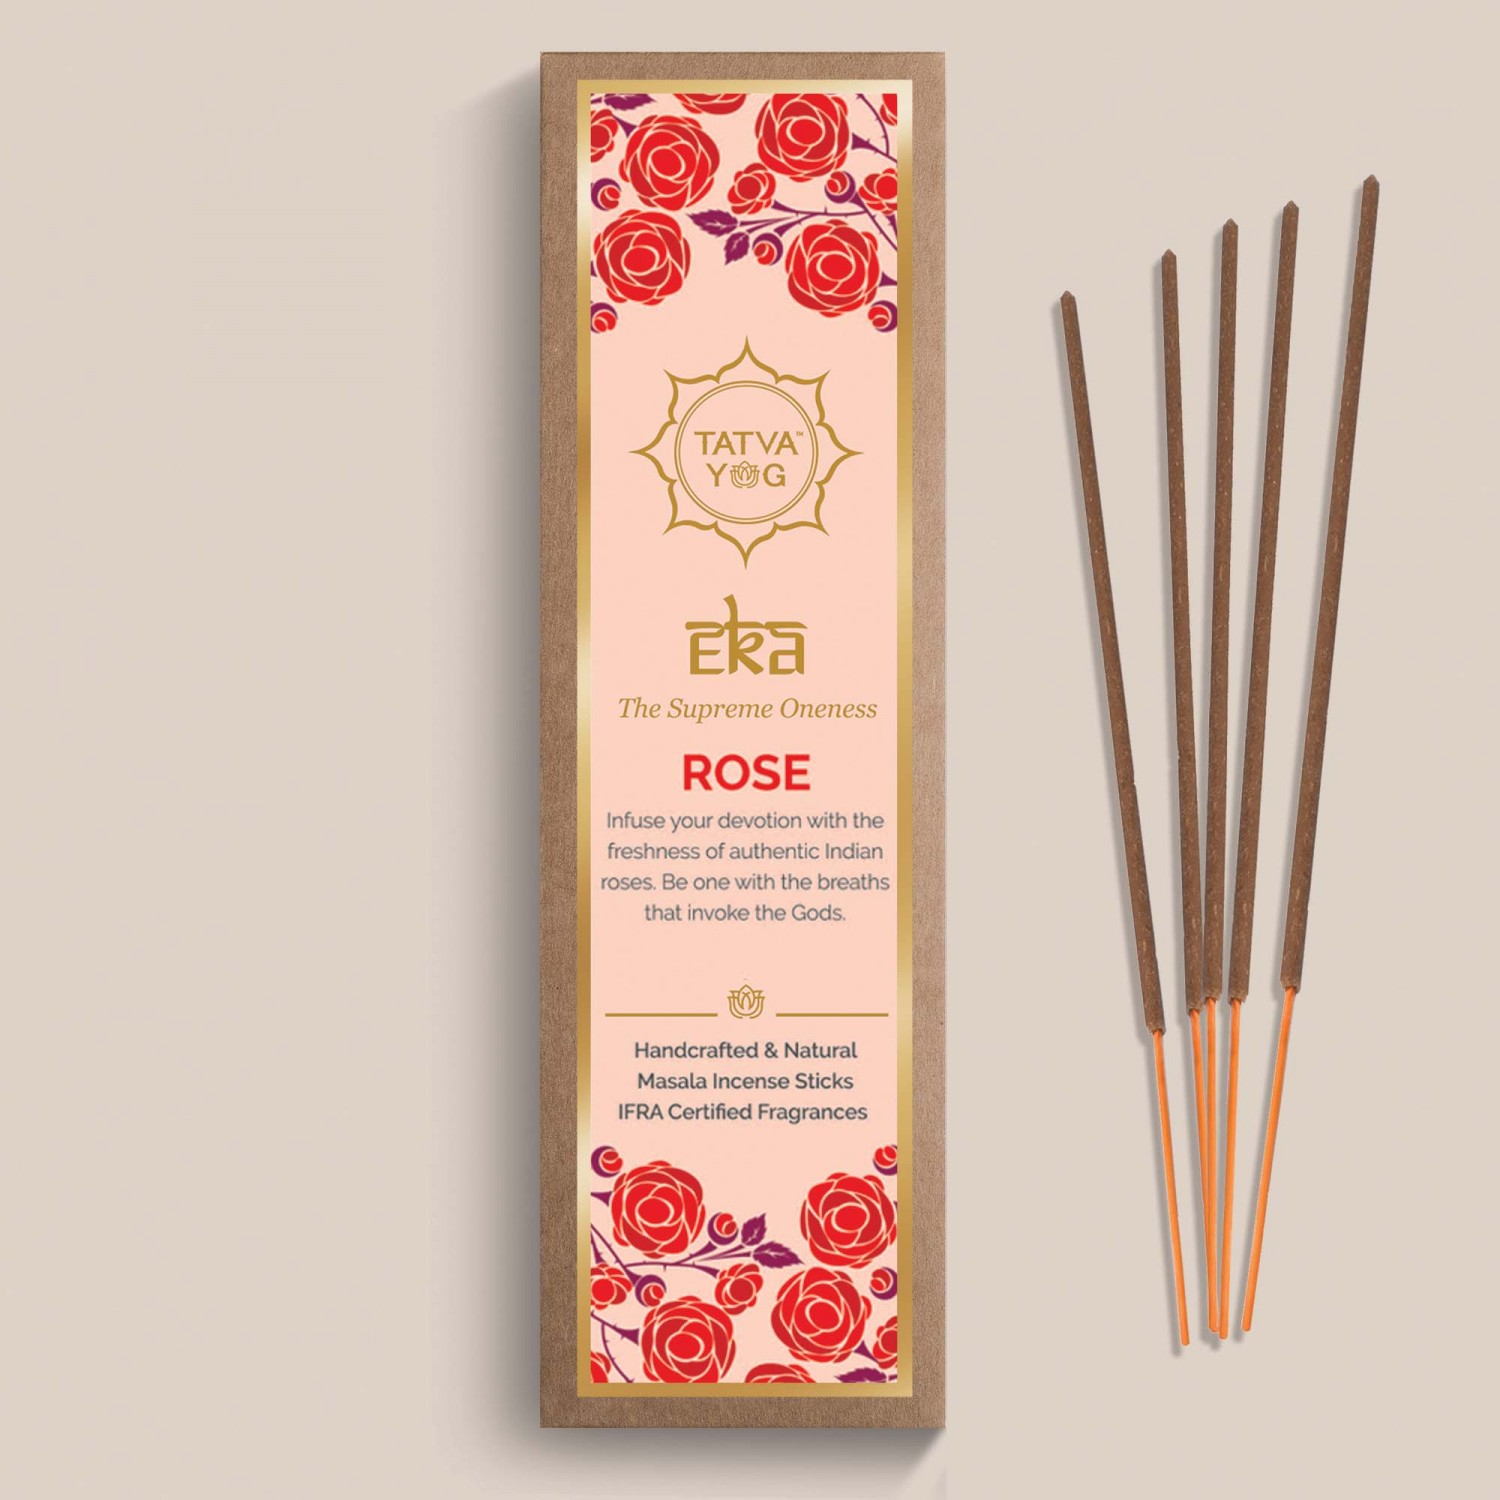 eka---rose-handcrafted-&-natural-masala-incense-sticks